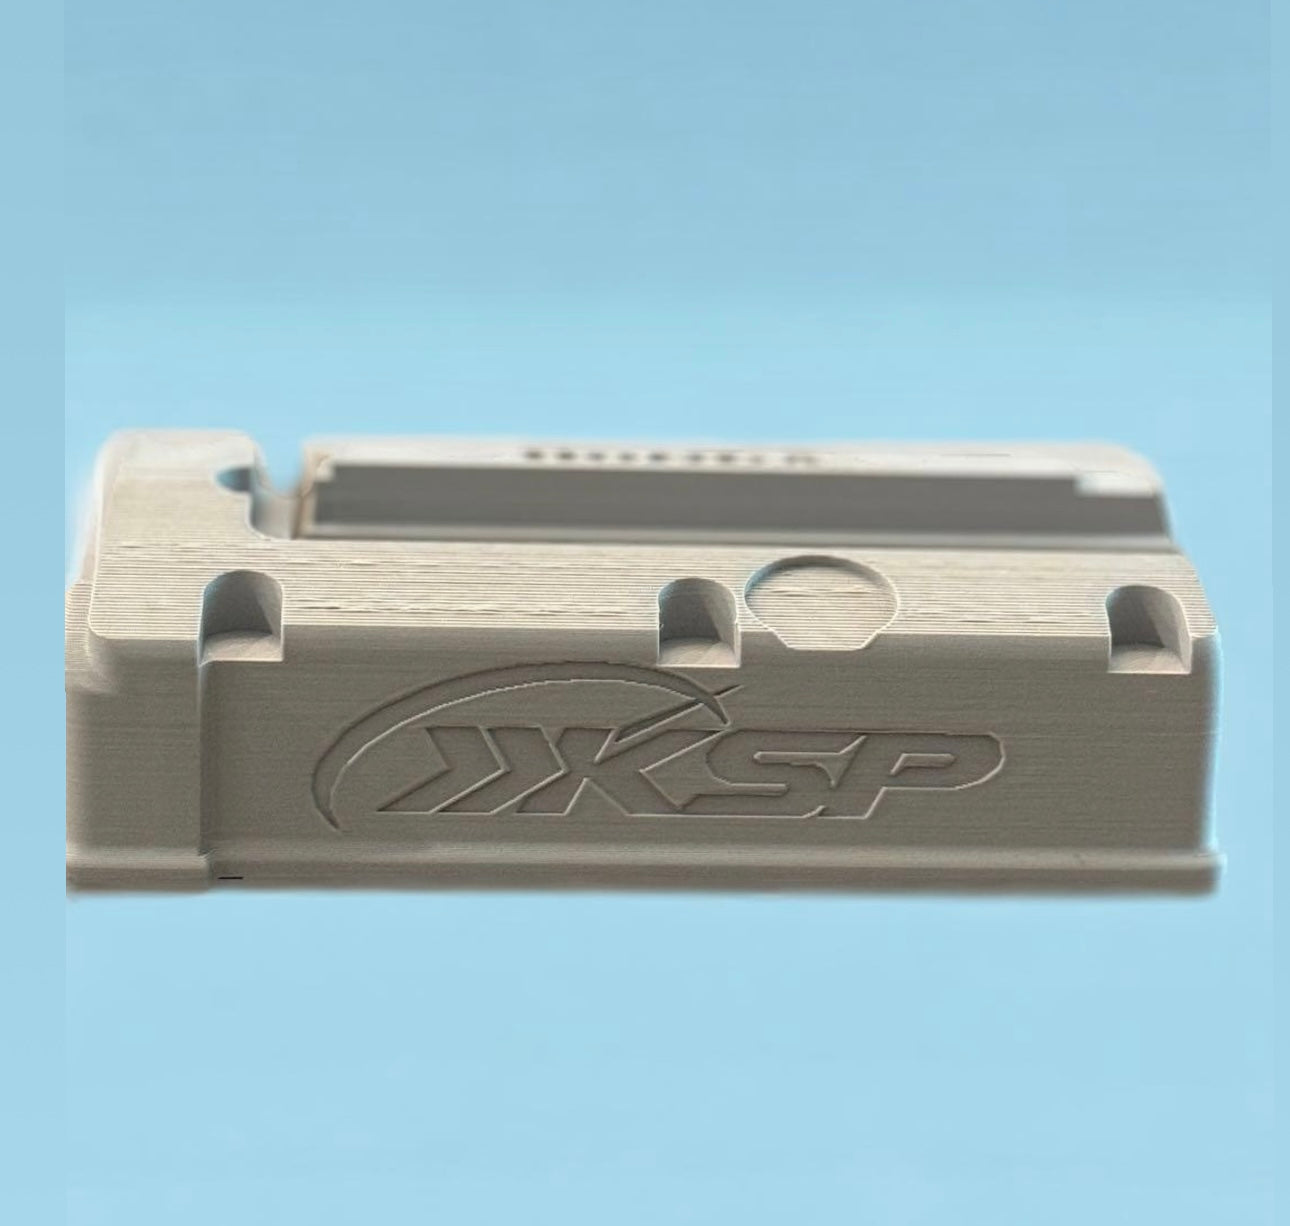 KSP (K series) Magnetic Spark Plug Holder